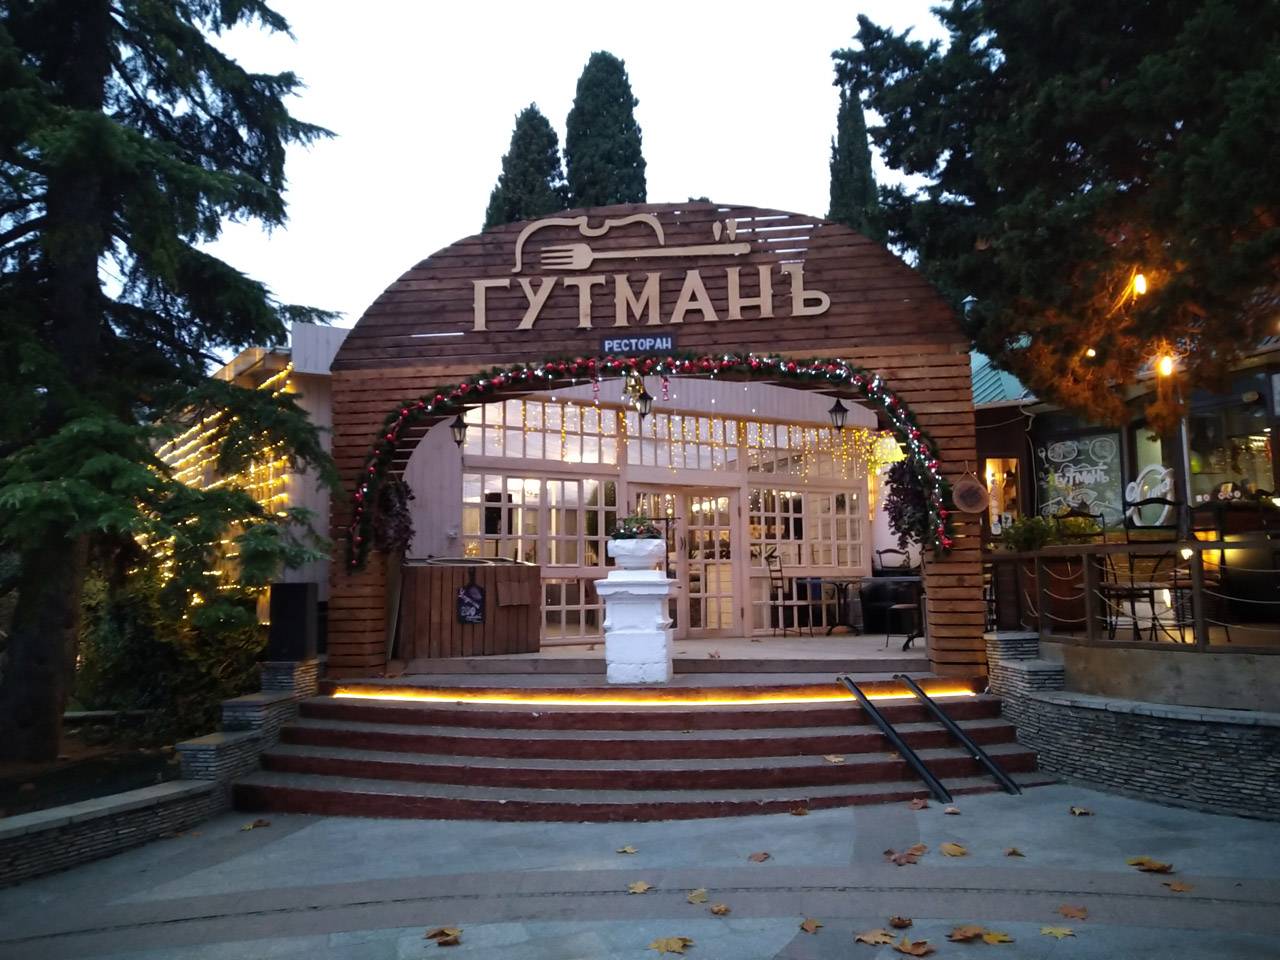 Ресторан «Гутманъ» в Крыму